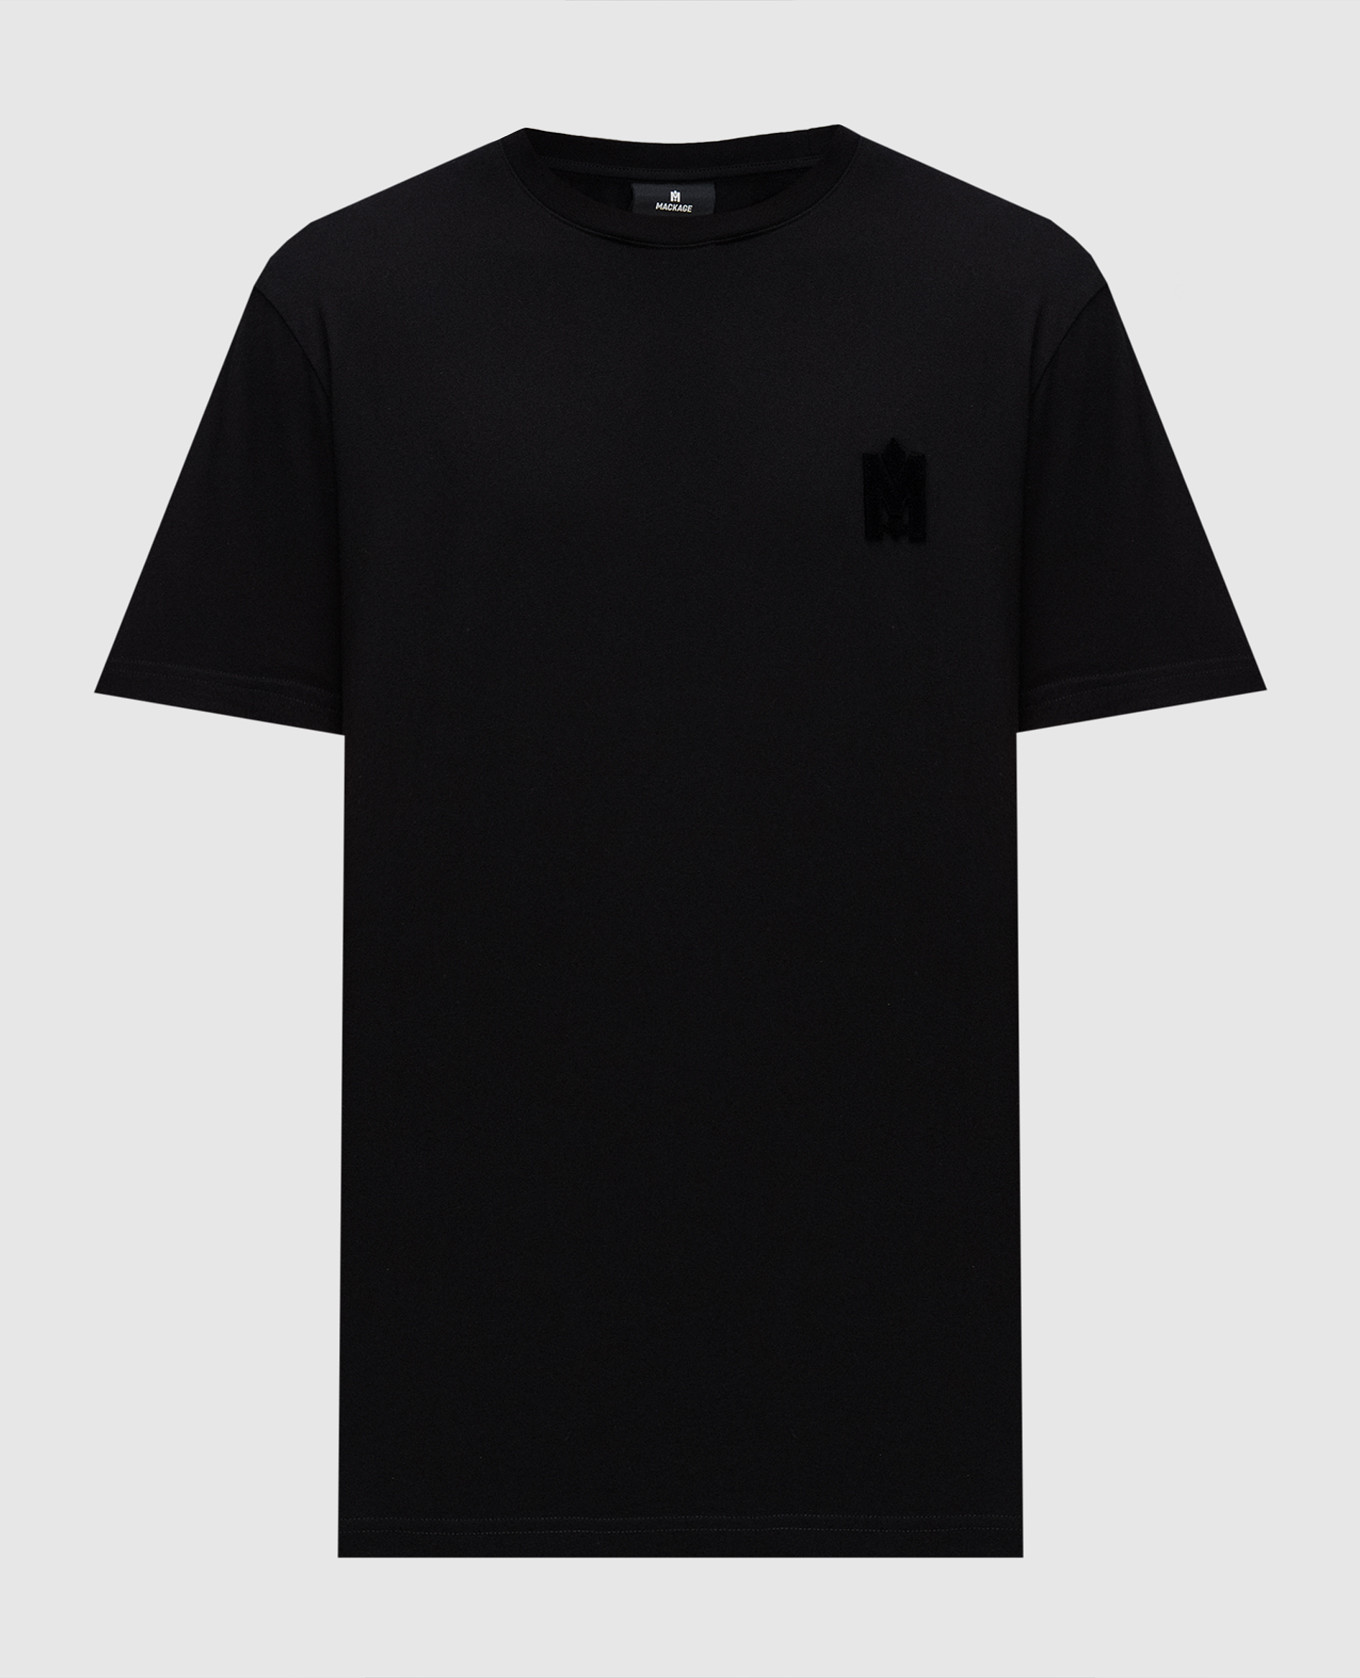 Черная футболка с фактурной эмблемой логотипа